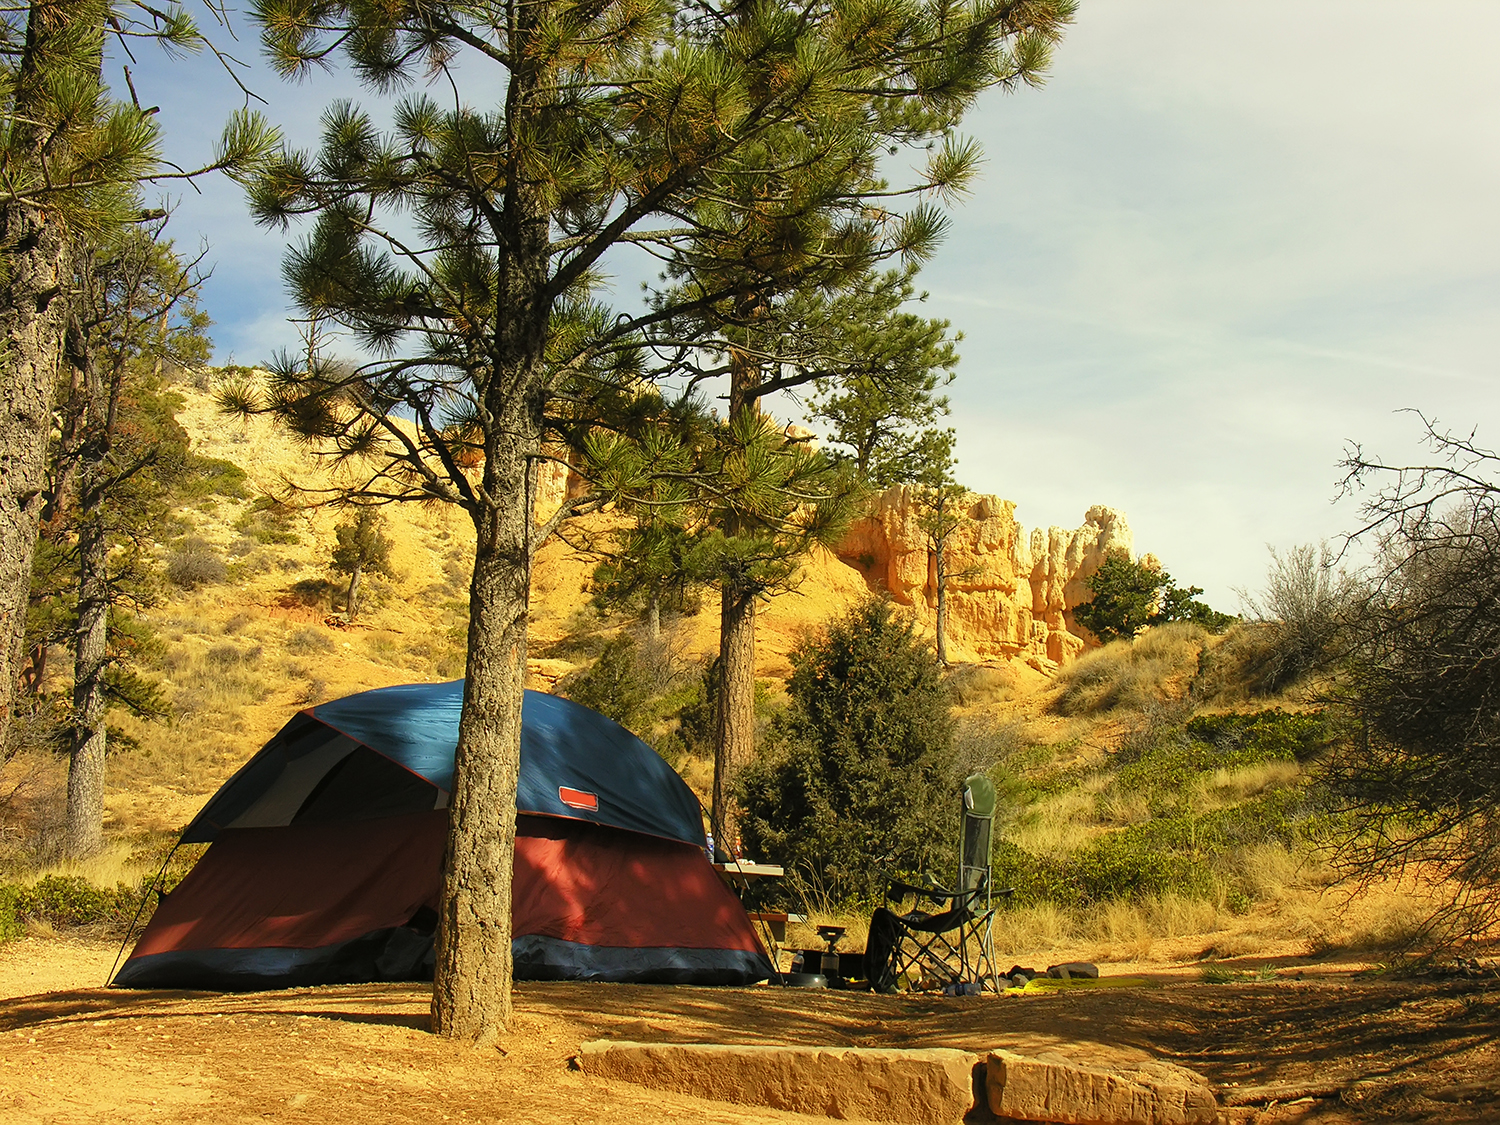 Camping at Bryce Canyon National Park